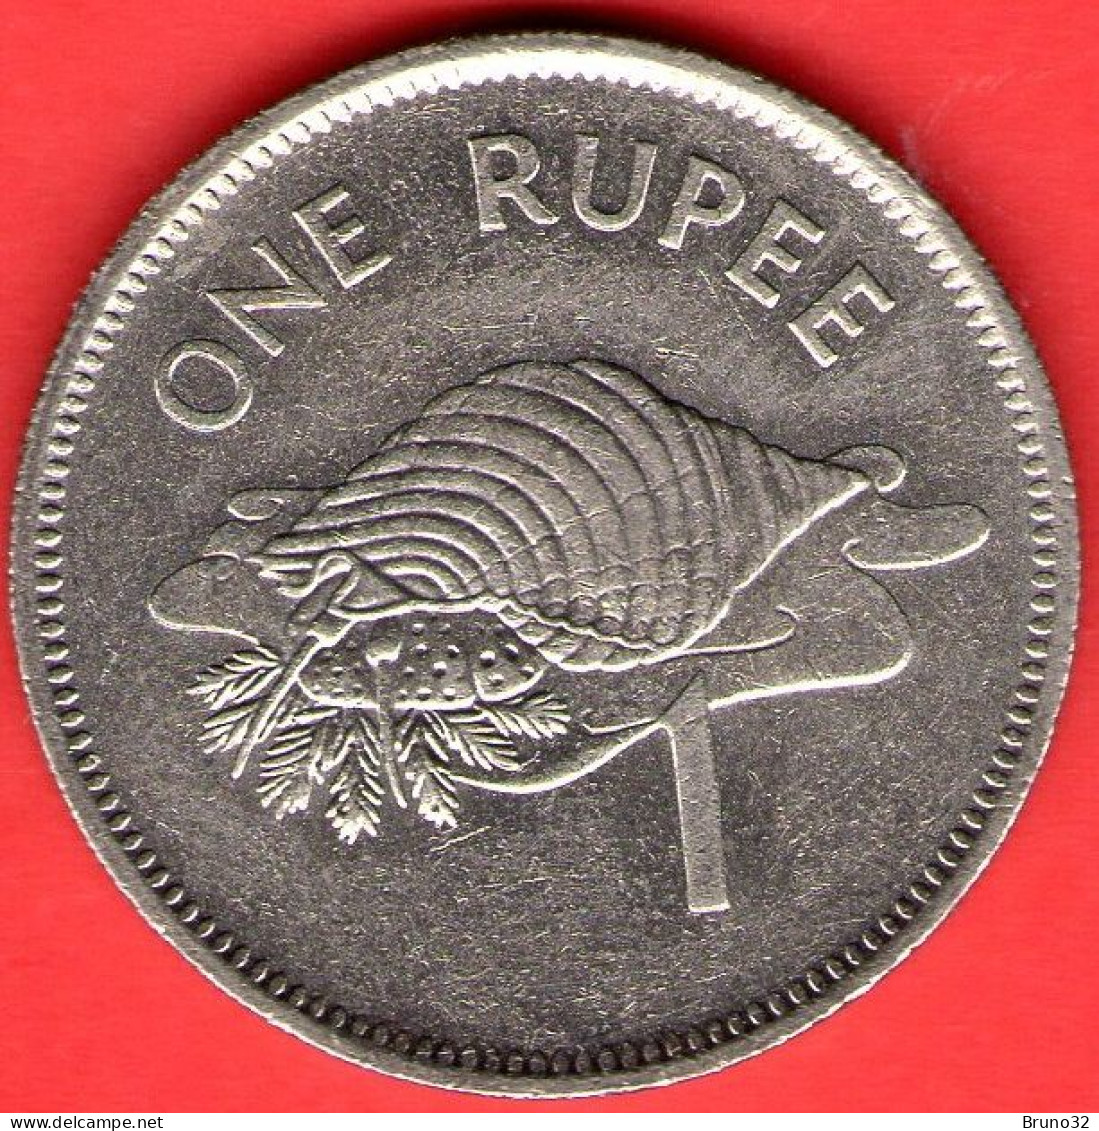 Seychelles - 1982 - 1 Rupee - QFDC/aUNC - Come Da Foto - Seychellen